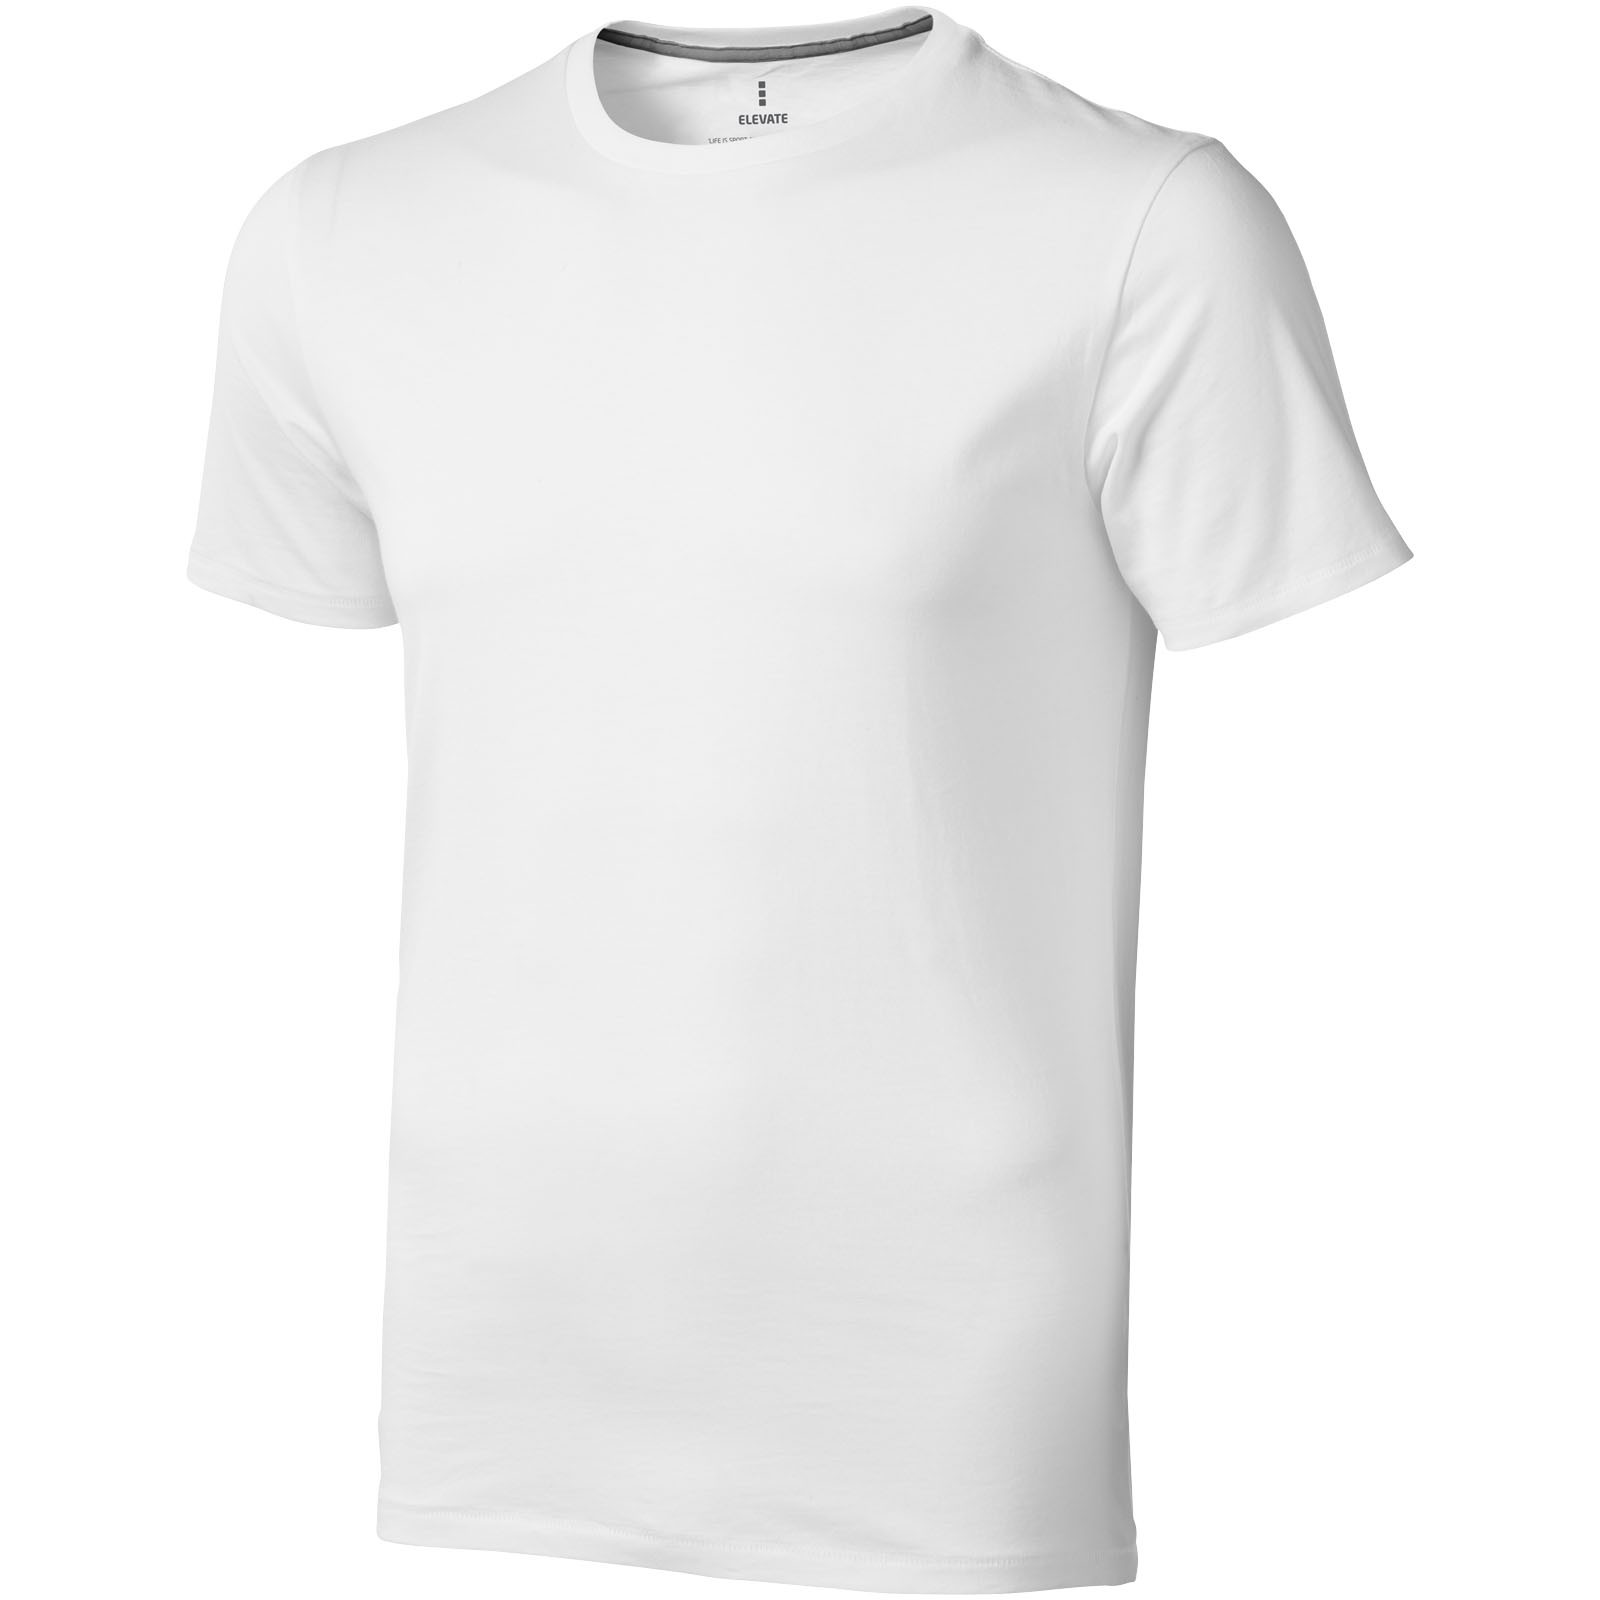 Camiseta de manga corta para hombre "Nanaimo" - Blanco / S